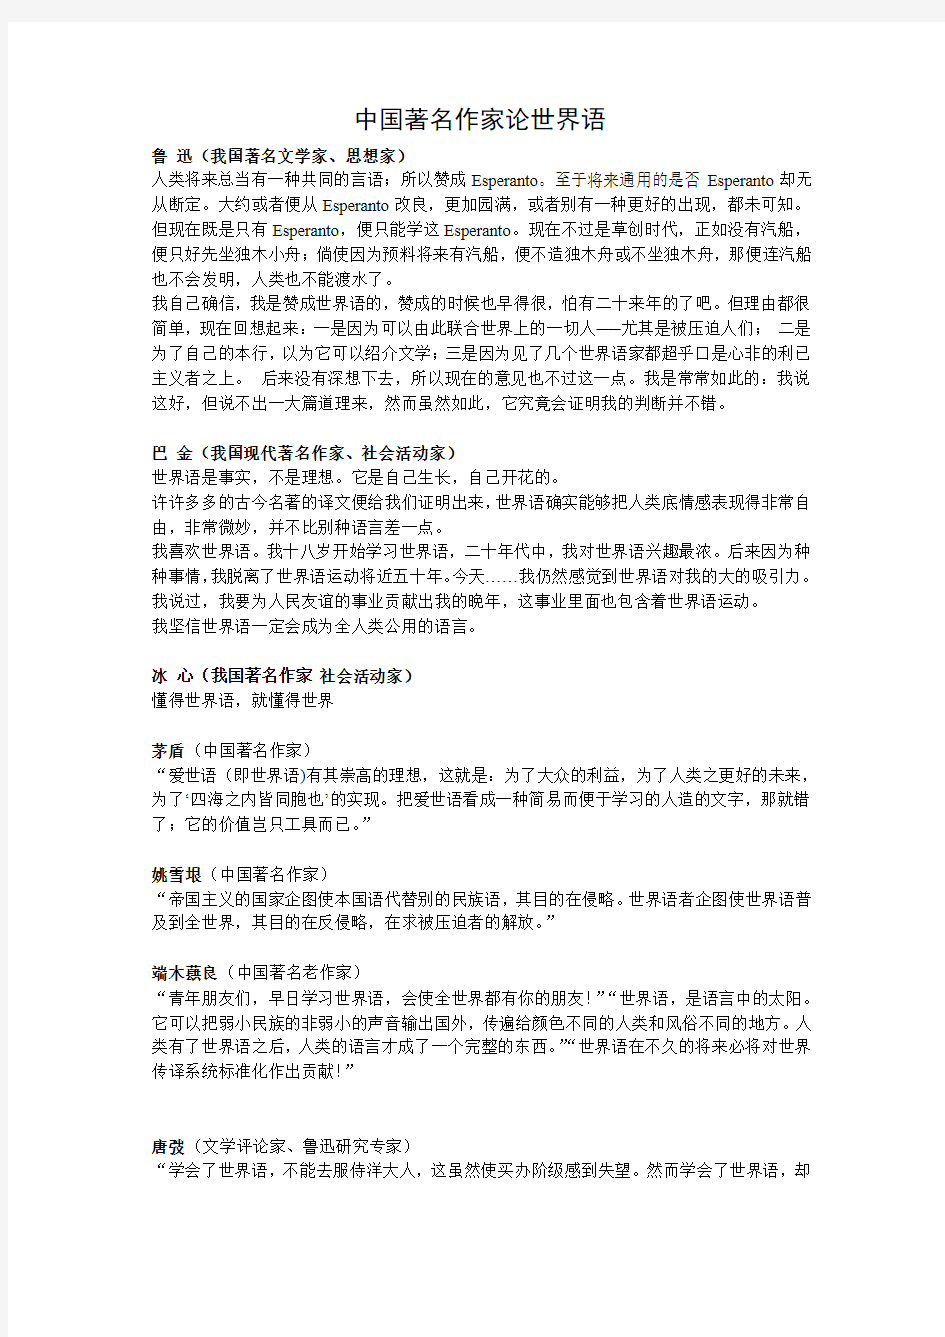 中国著名作家论世界语